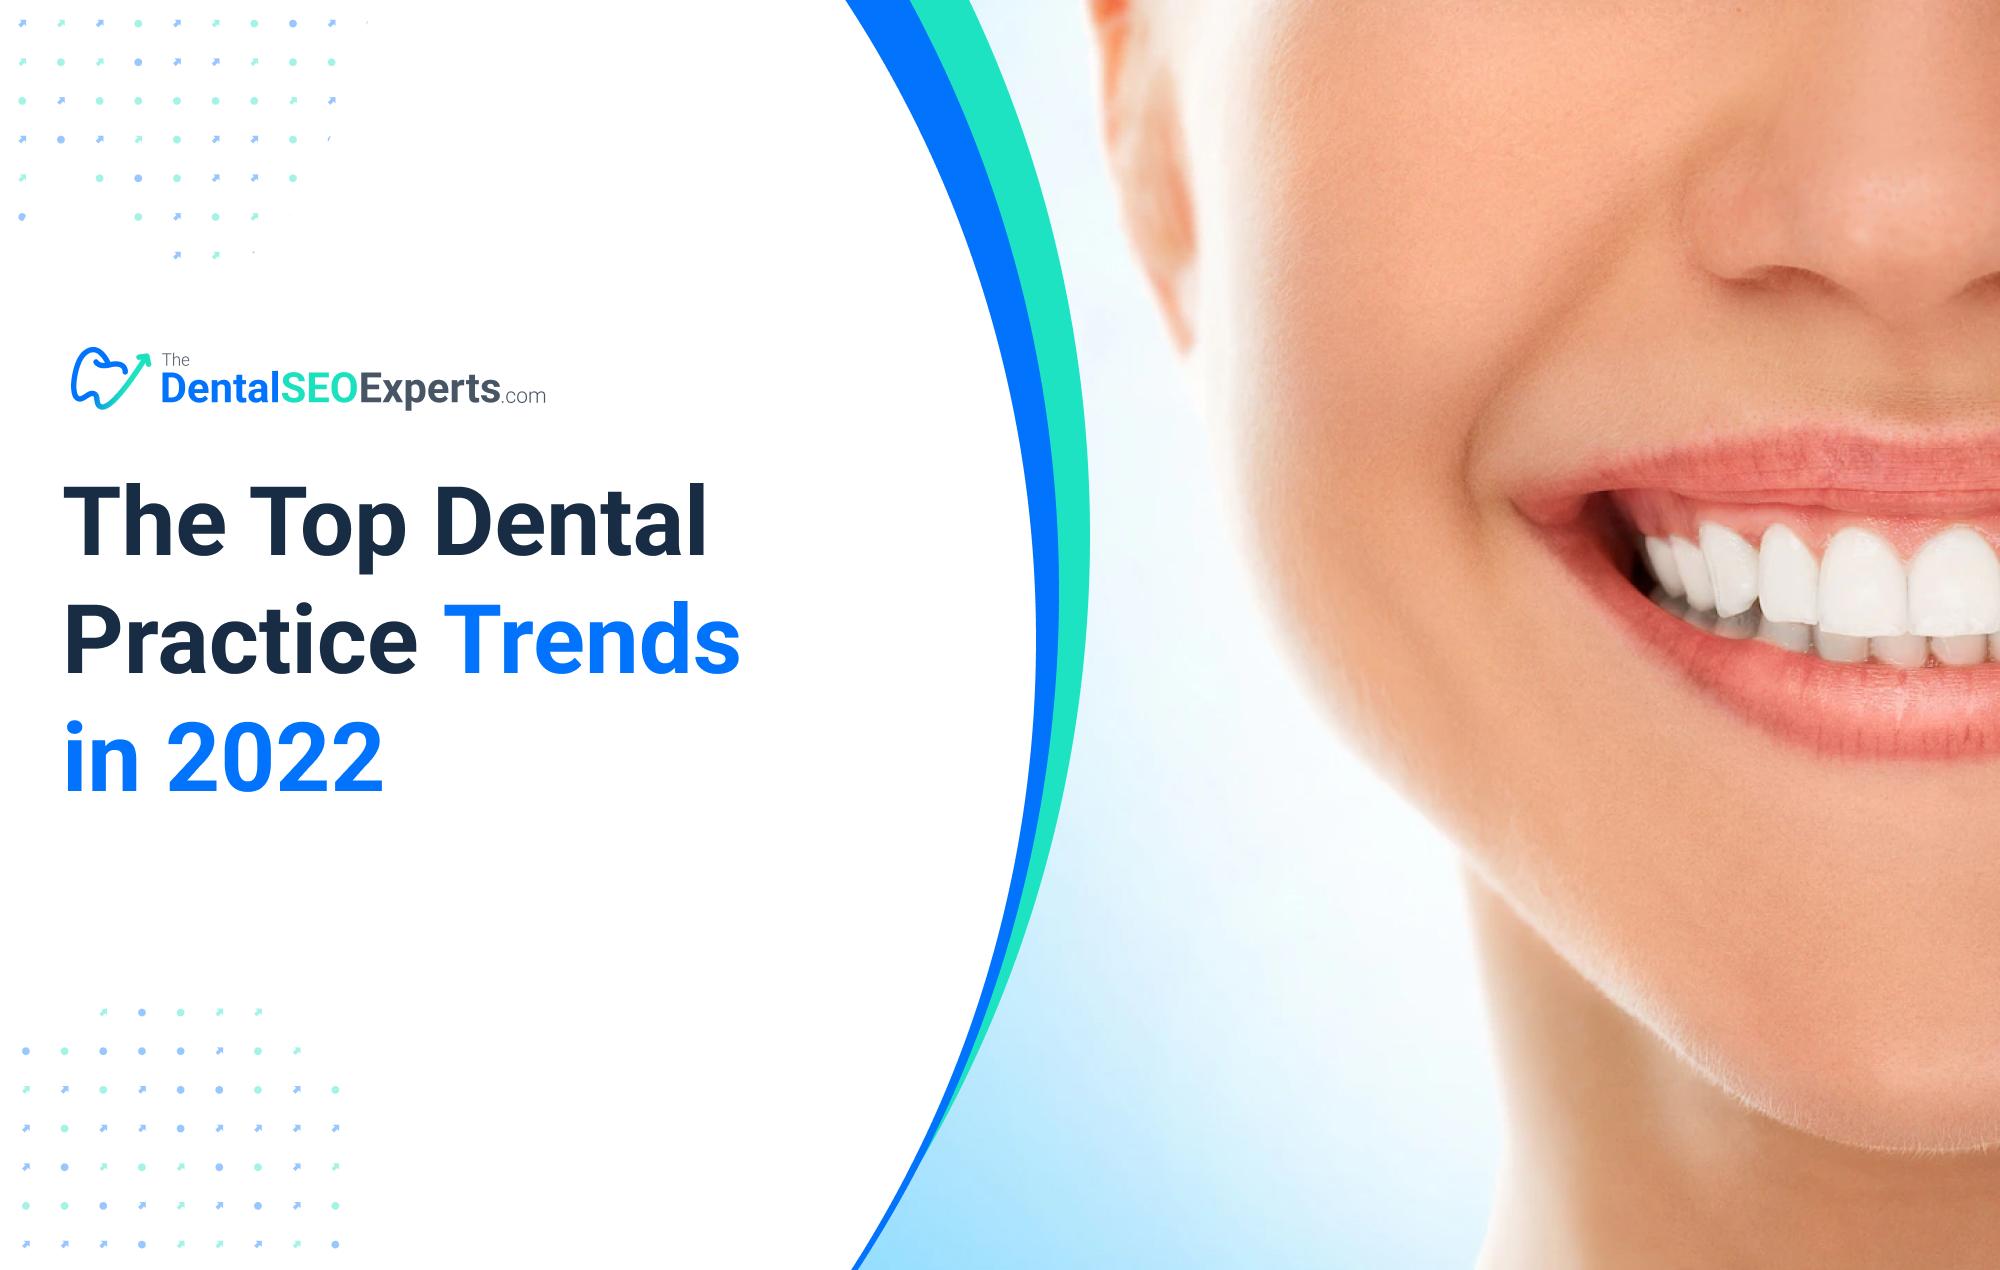 The Top Dental Practice Trends in 2022